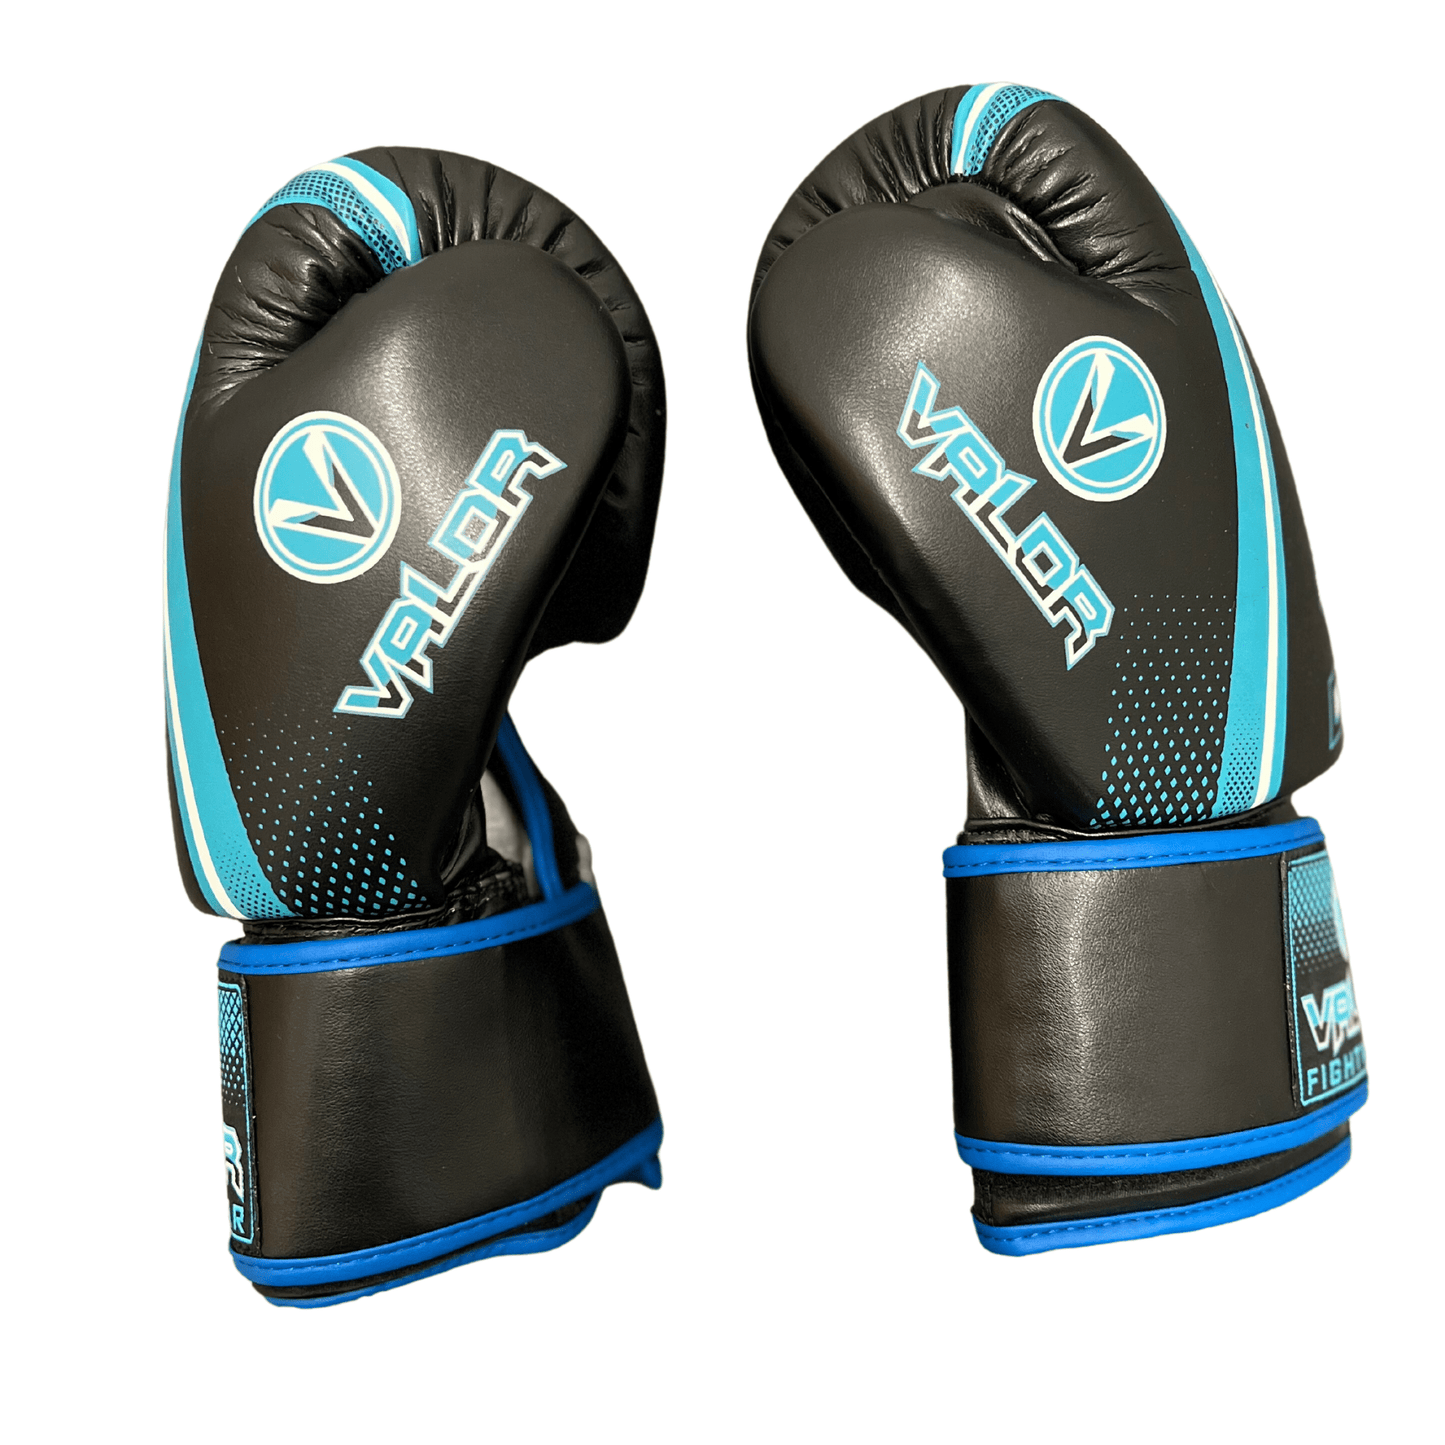 Fade 12oz Boxing Gloves - Black/Blue - Valor Fightwear